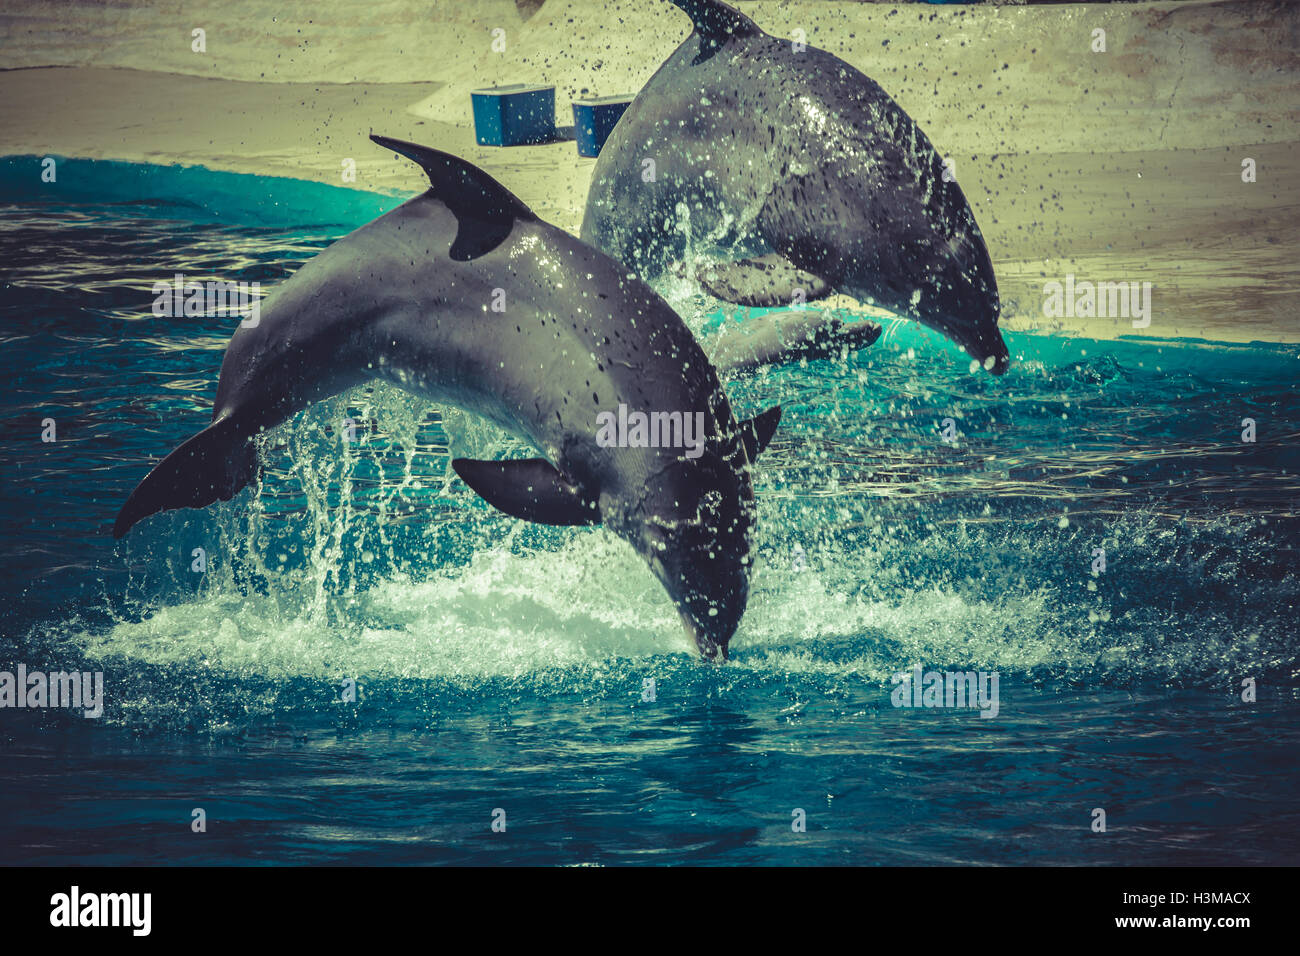 Delphin springen aus dem Wasser im pool Stockfoto